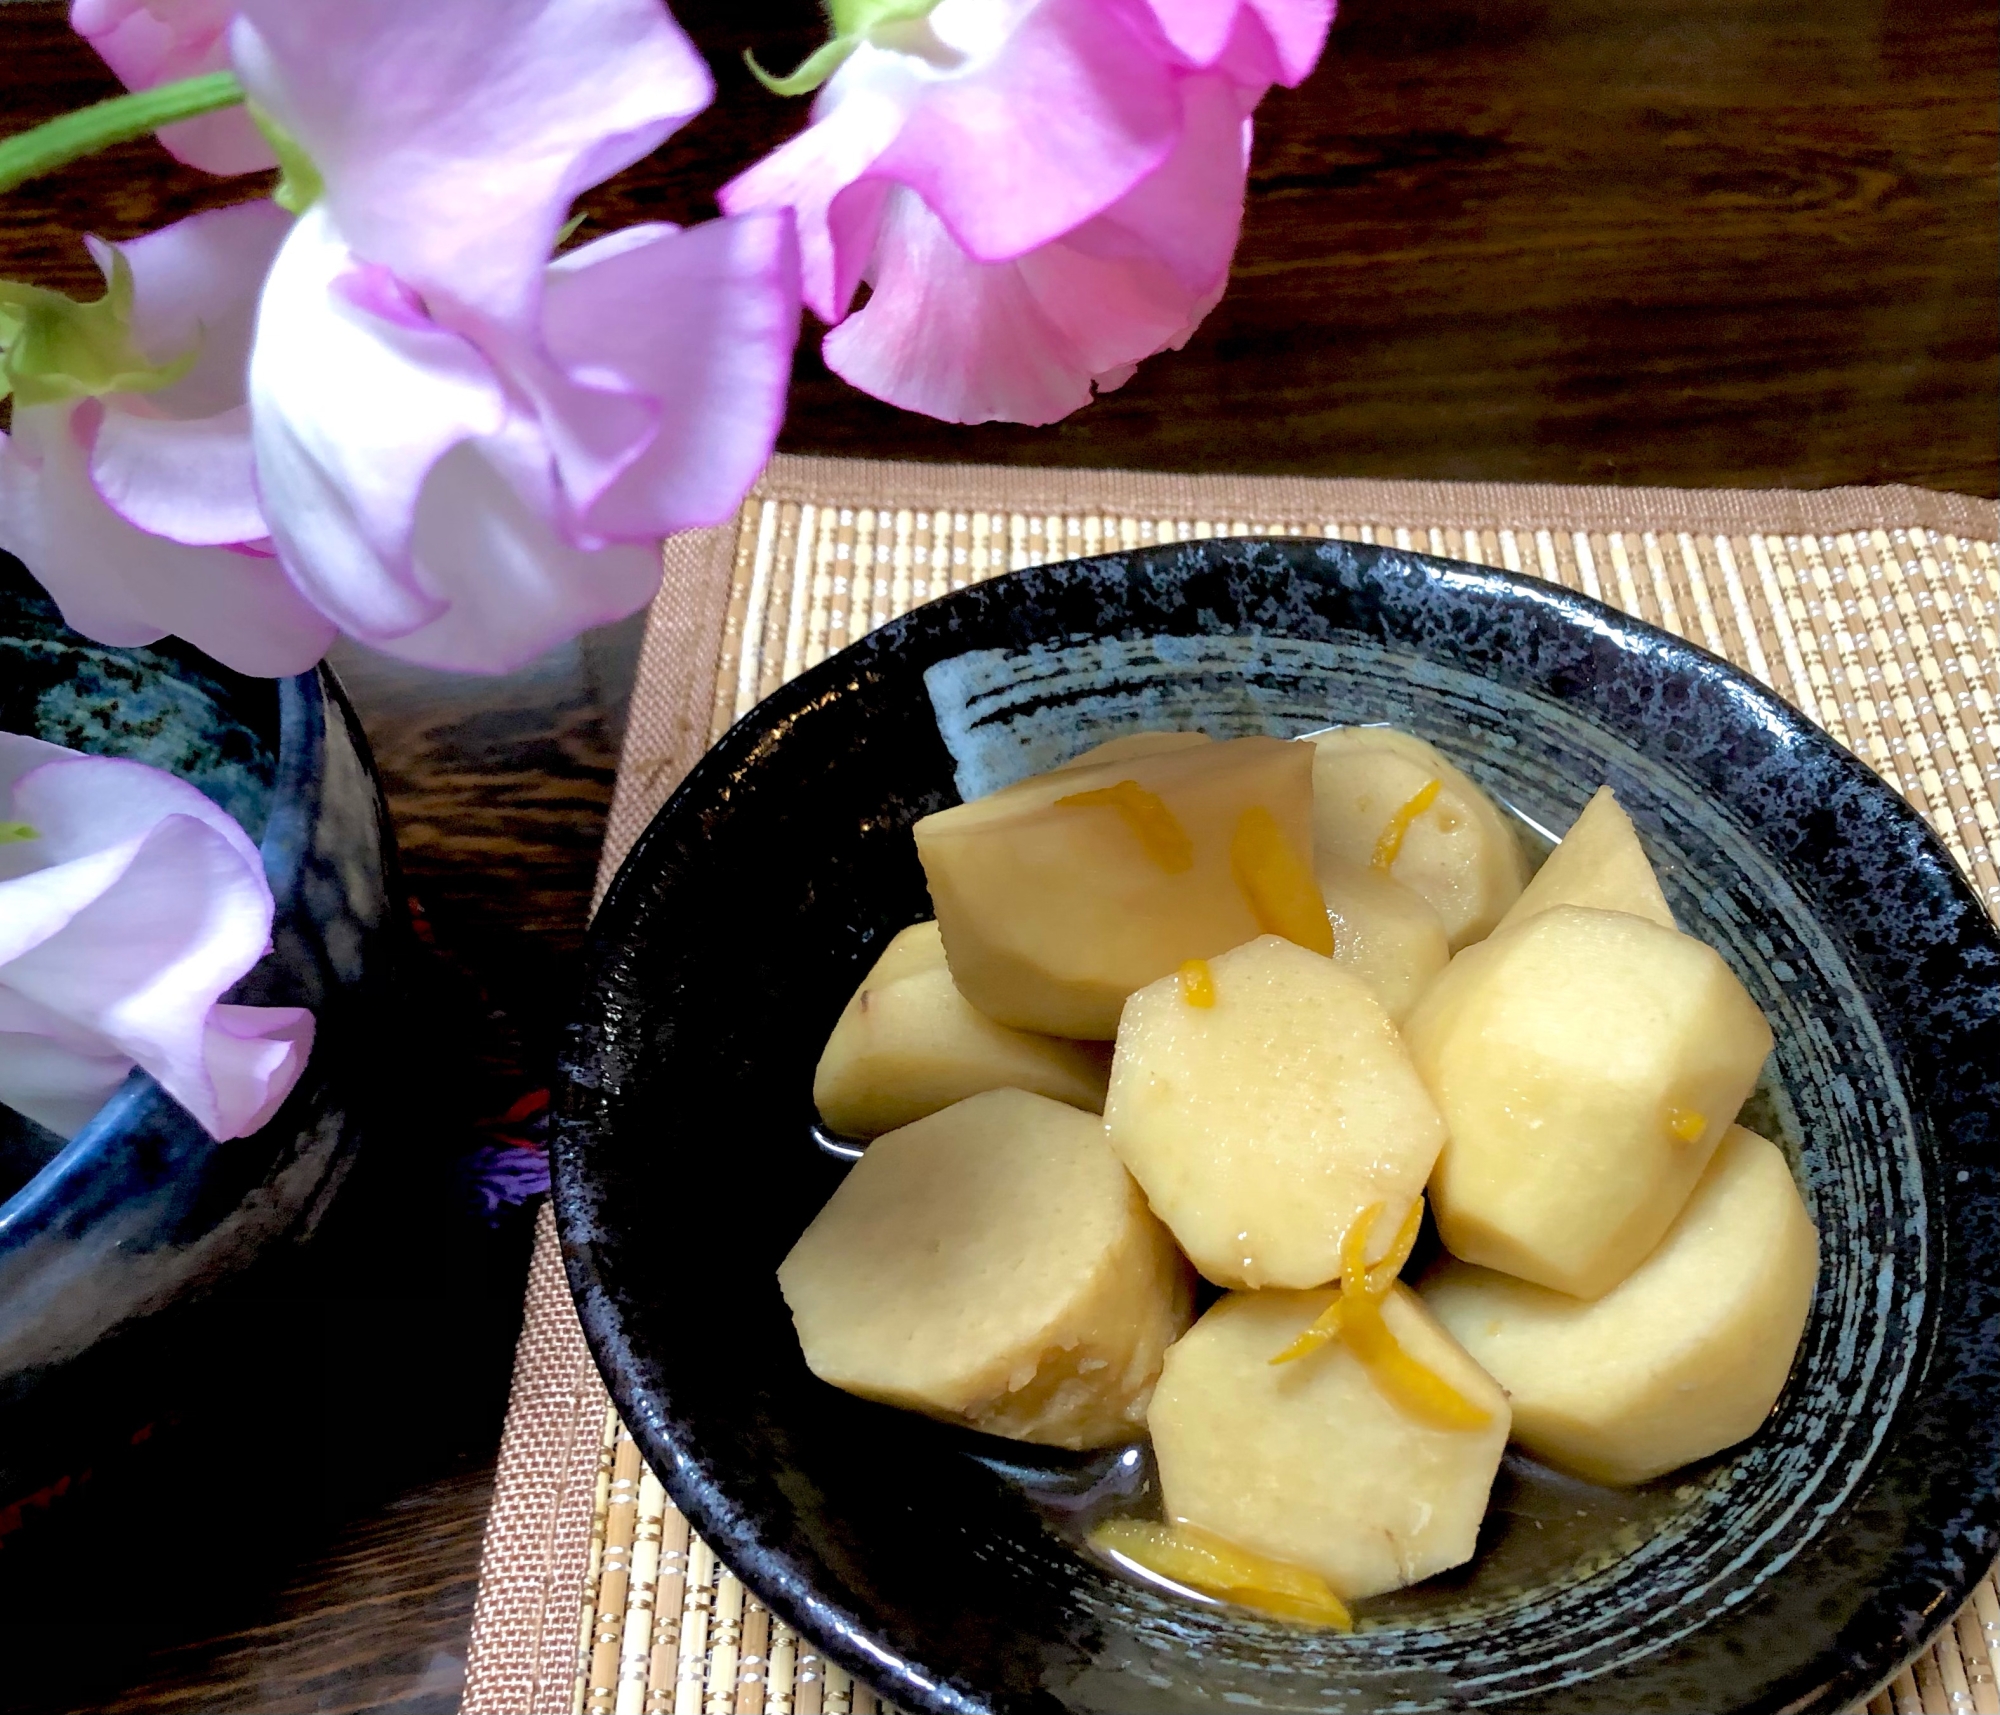 里芋の柚子ポン酢煮